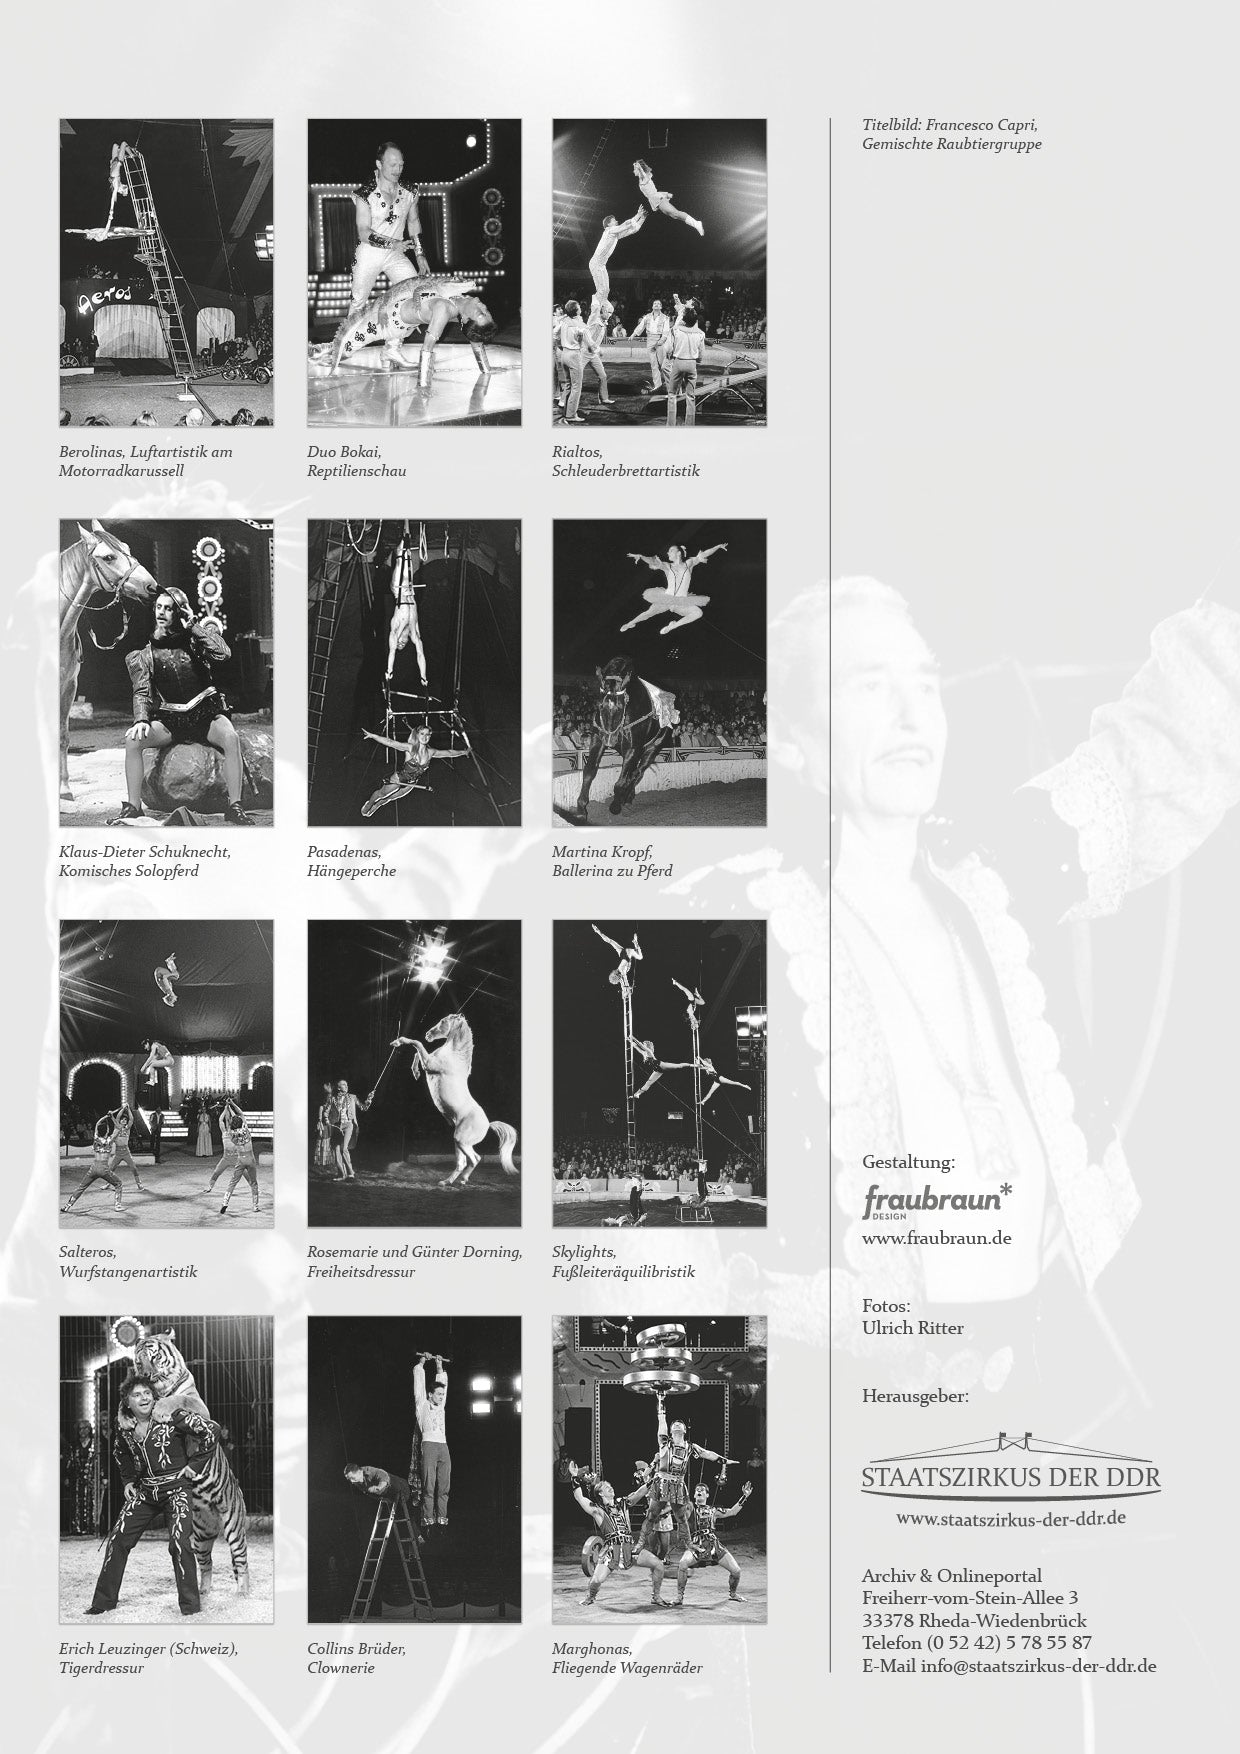 Zirkuskalender Kalender Staatszirkus der DDR 2015 Ulrich Ritter "Zirkuszauber"